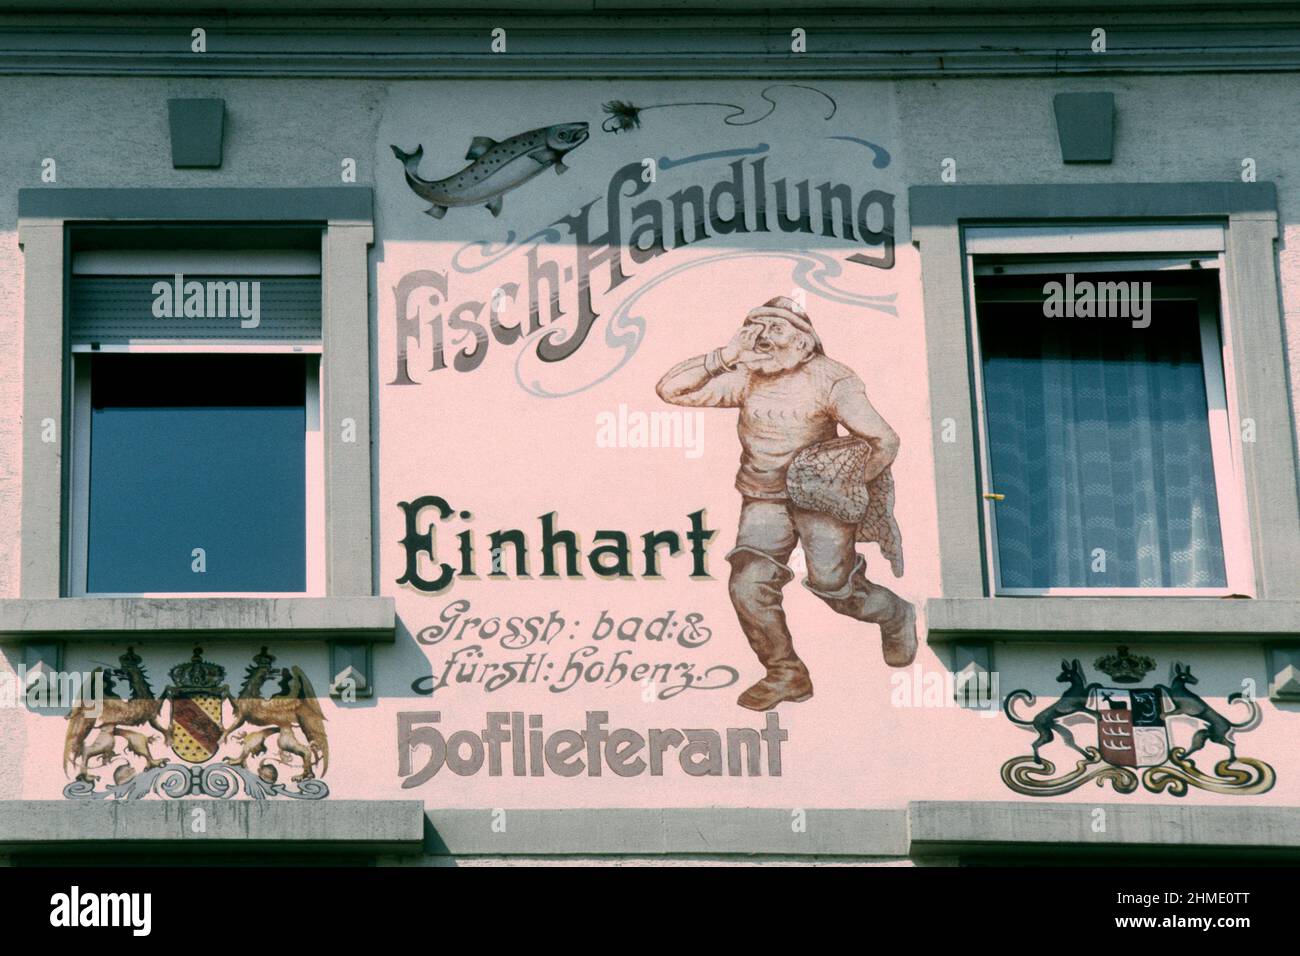 Tienda de pescadería decorada en estilo tradicional en 1981, Konstanz, Baden-Württemberg, Alemania Foto de stock